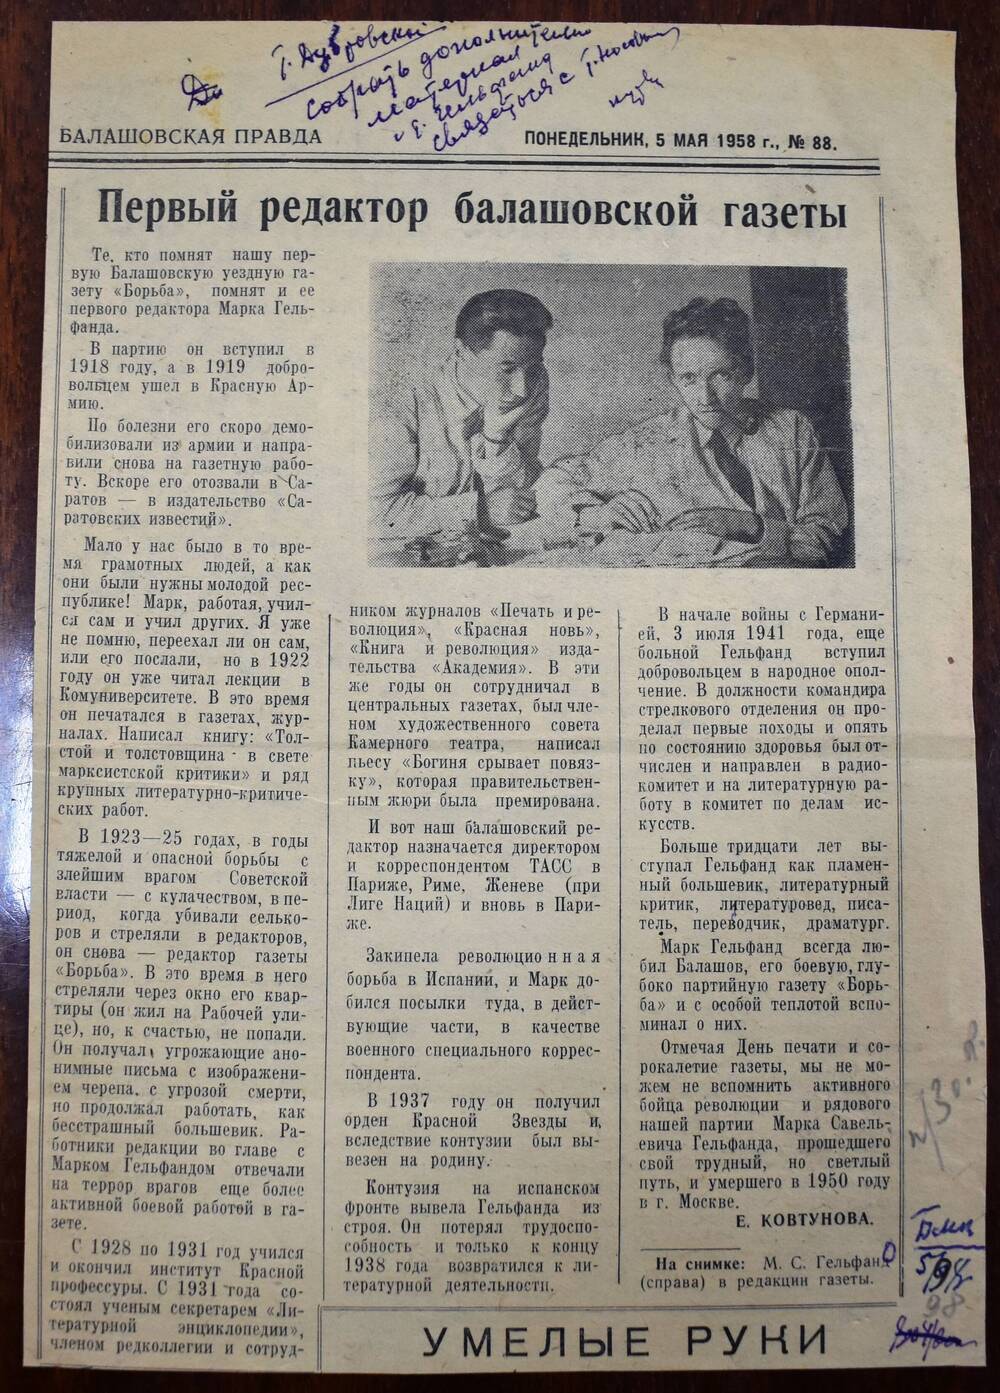 Фрагмент газеты «Балашовская правда»
№88 от 5 мая 1958 г.